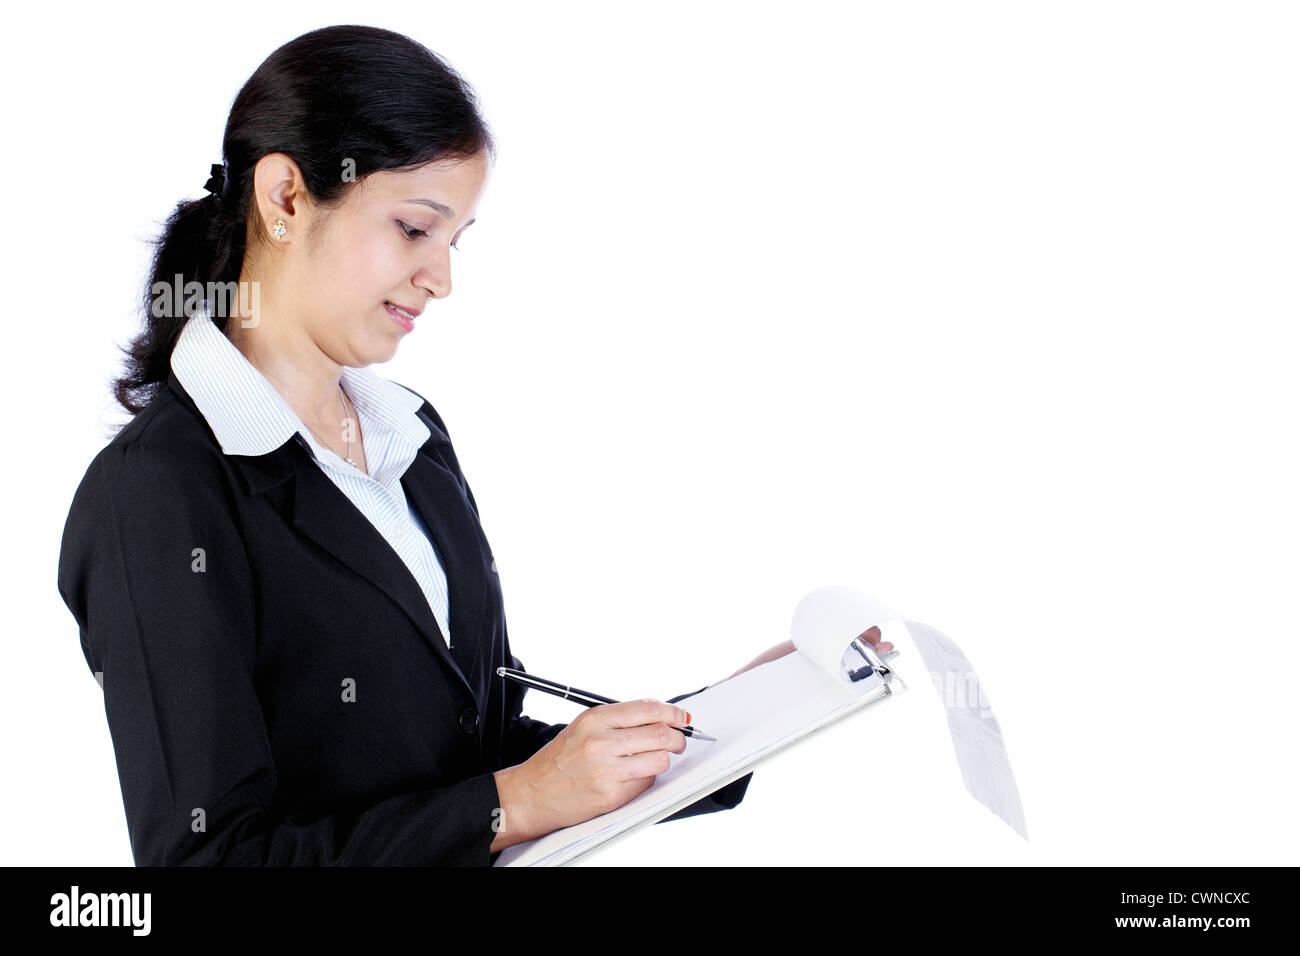 Hermosa mujer de negocios sosteniendo un portapapeles y escrito sobre fondo blanco. Foto de stock